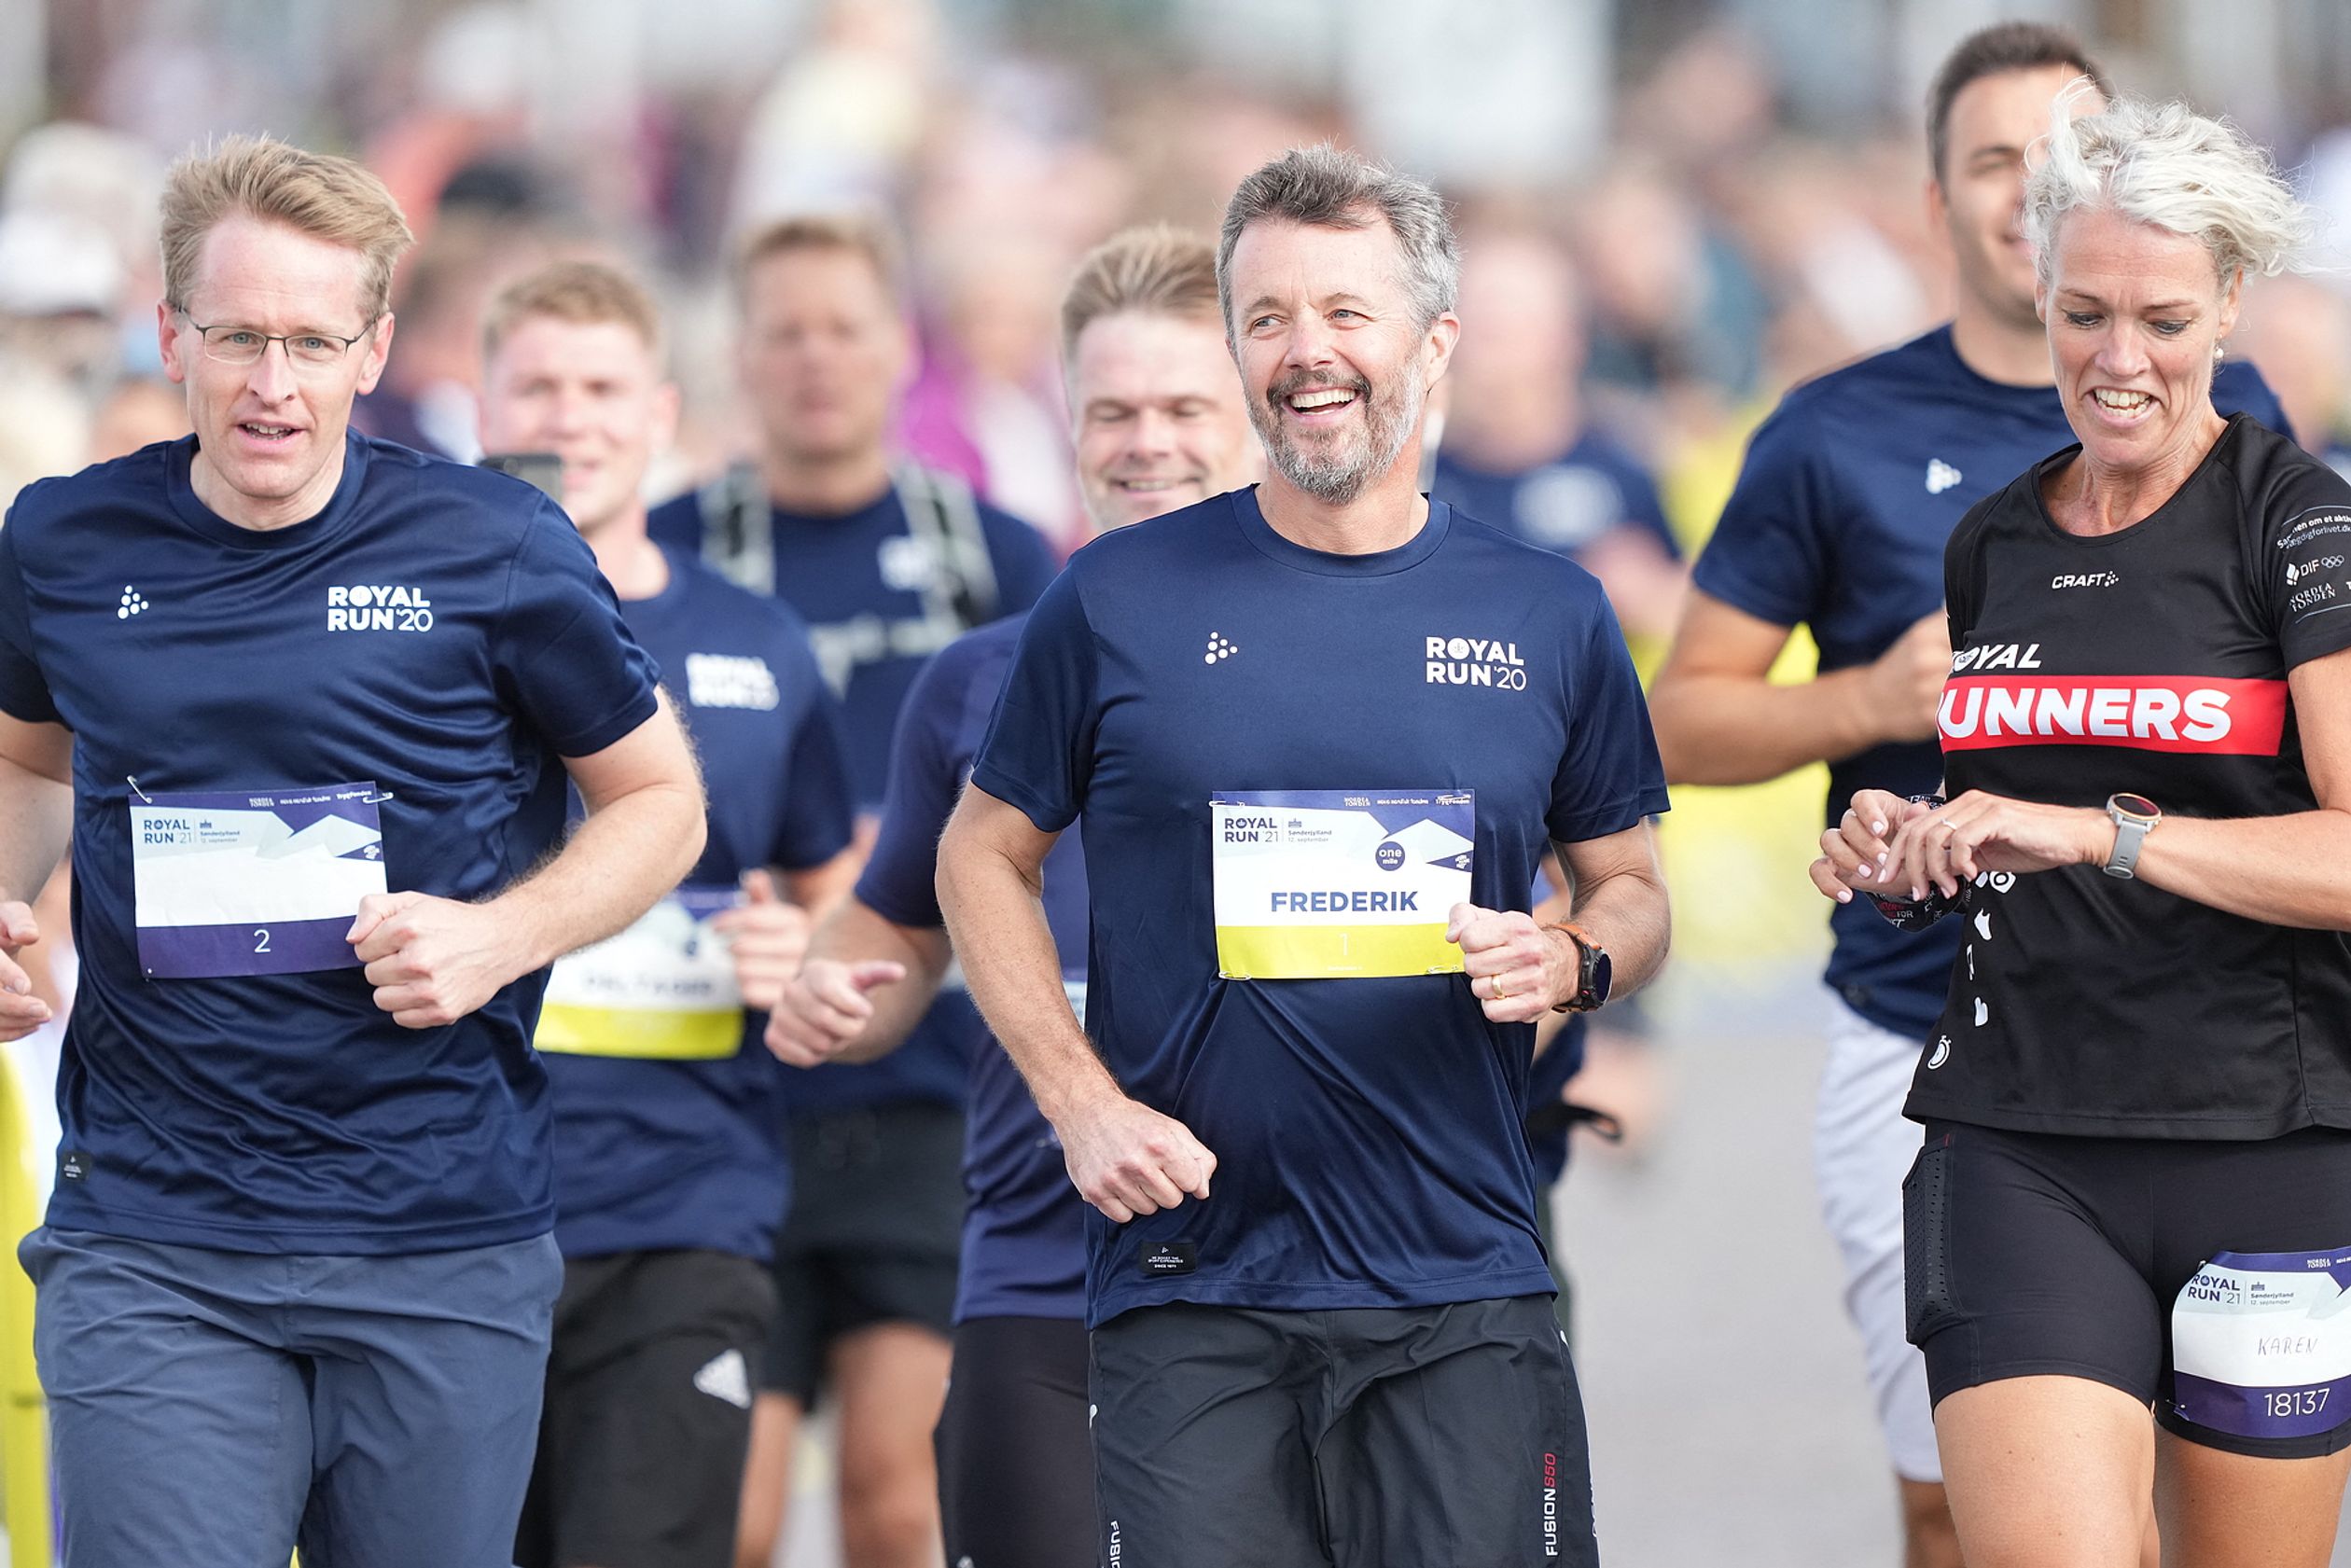 Tienduizenden mensen in Denemarken rennen of lopen mee.